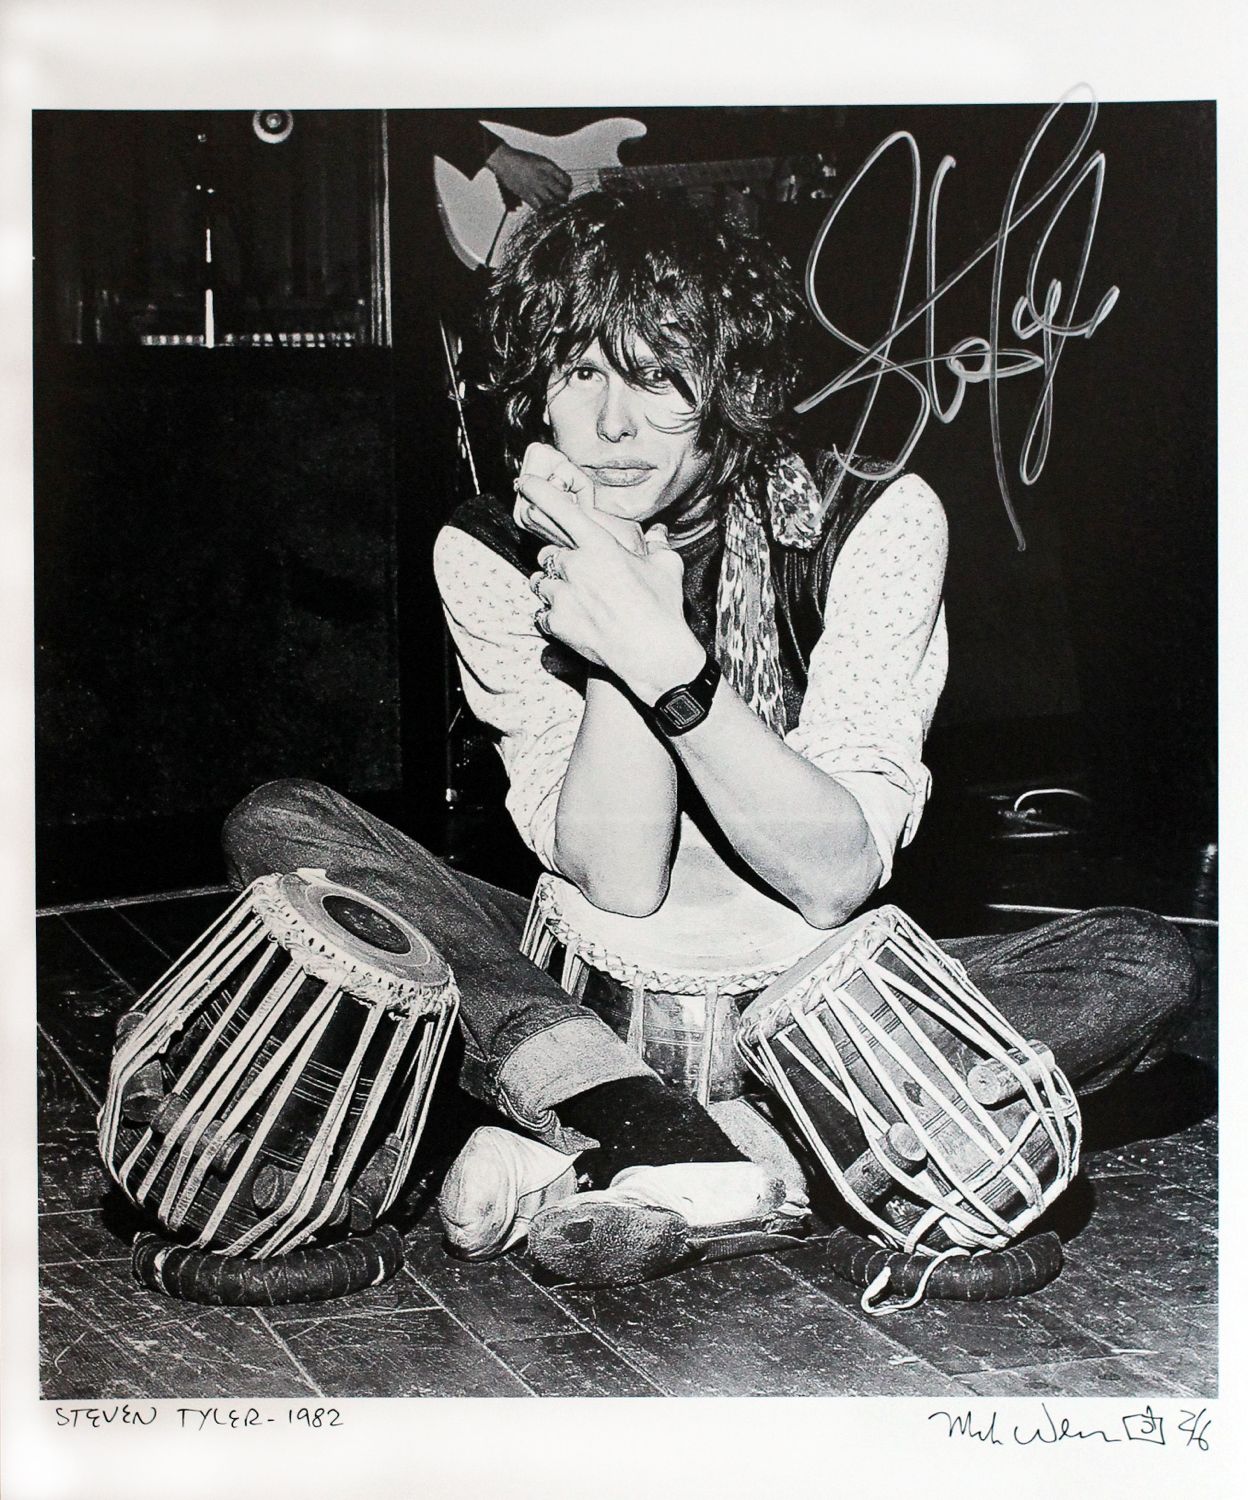 Steven Tyler of Aerosmith 1982 (13 x19) 2/6 